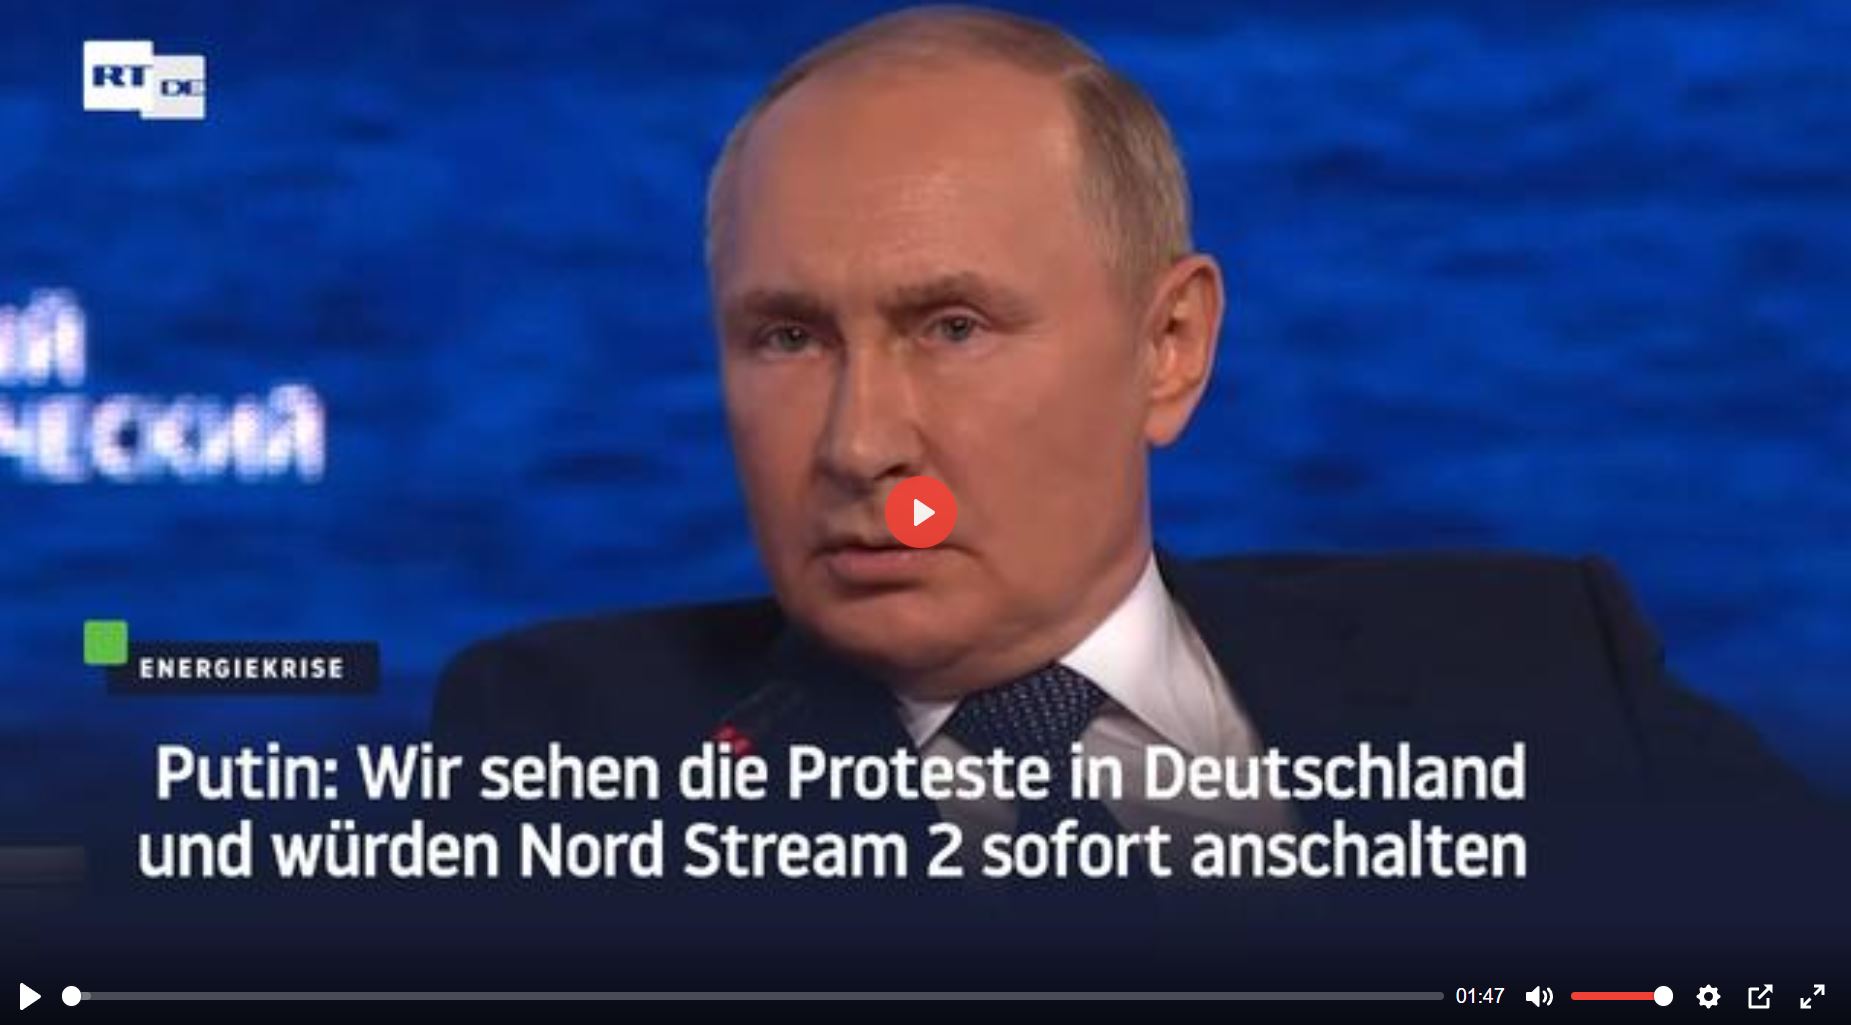 Putin   Wir sehen die Proteste in Deutschland und würden Nord Stream 2 sofort anschalten